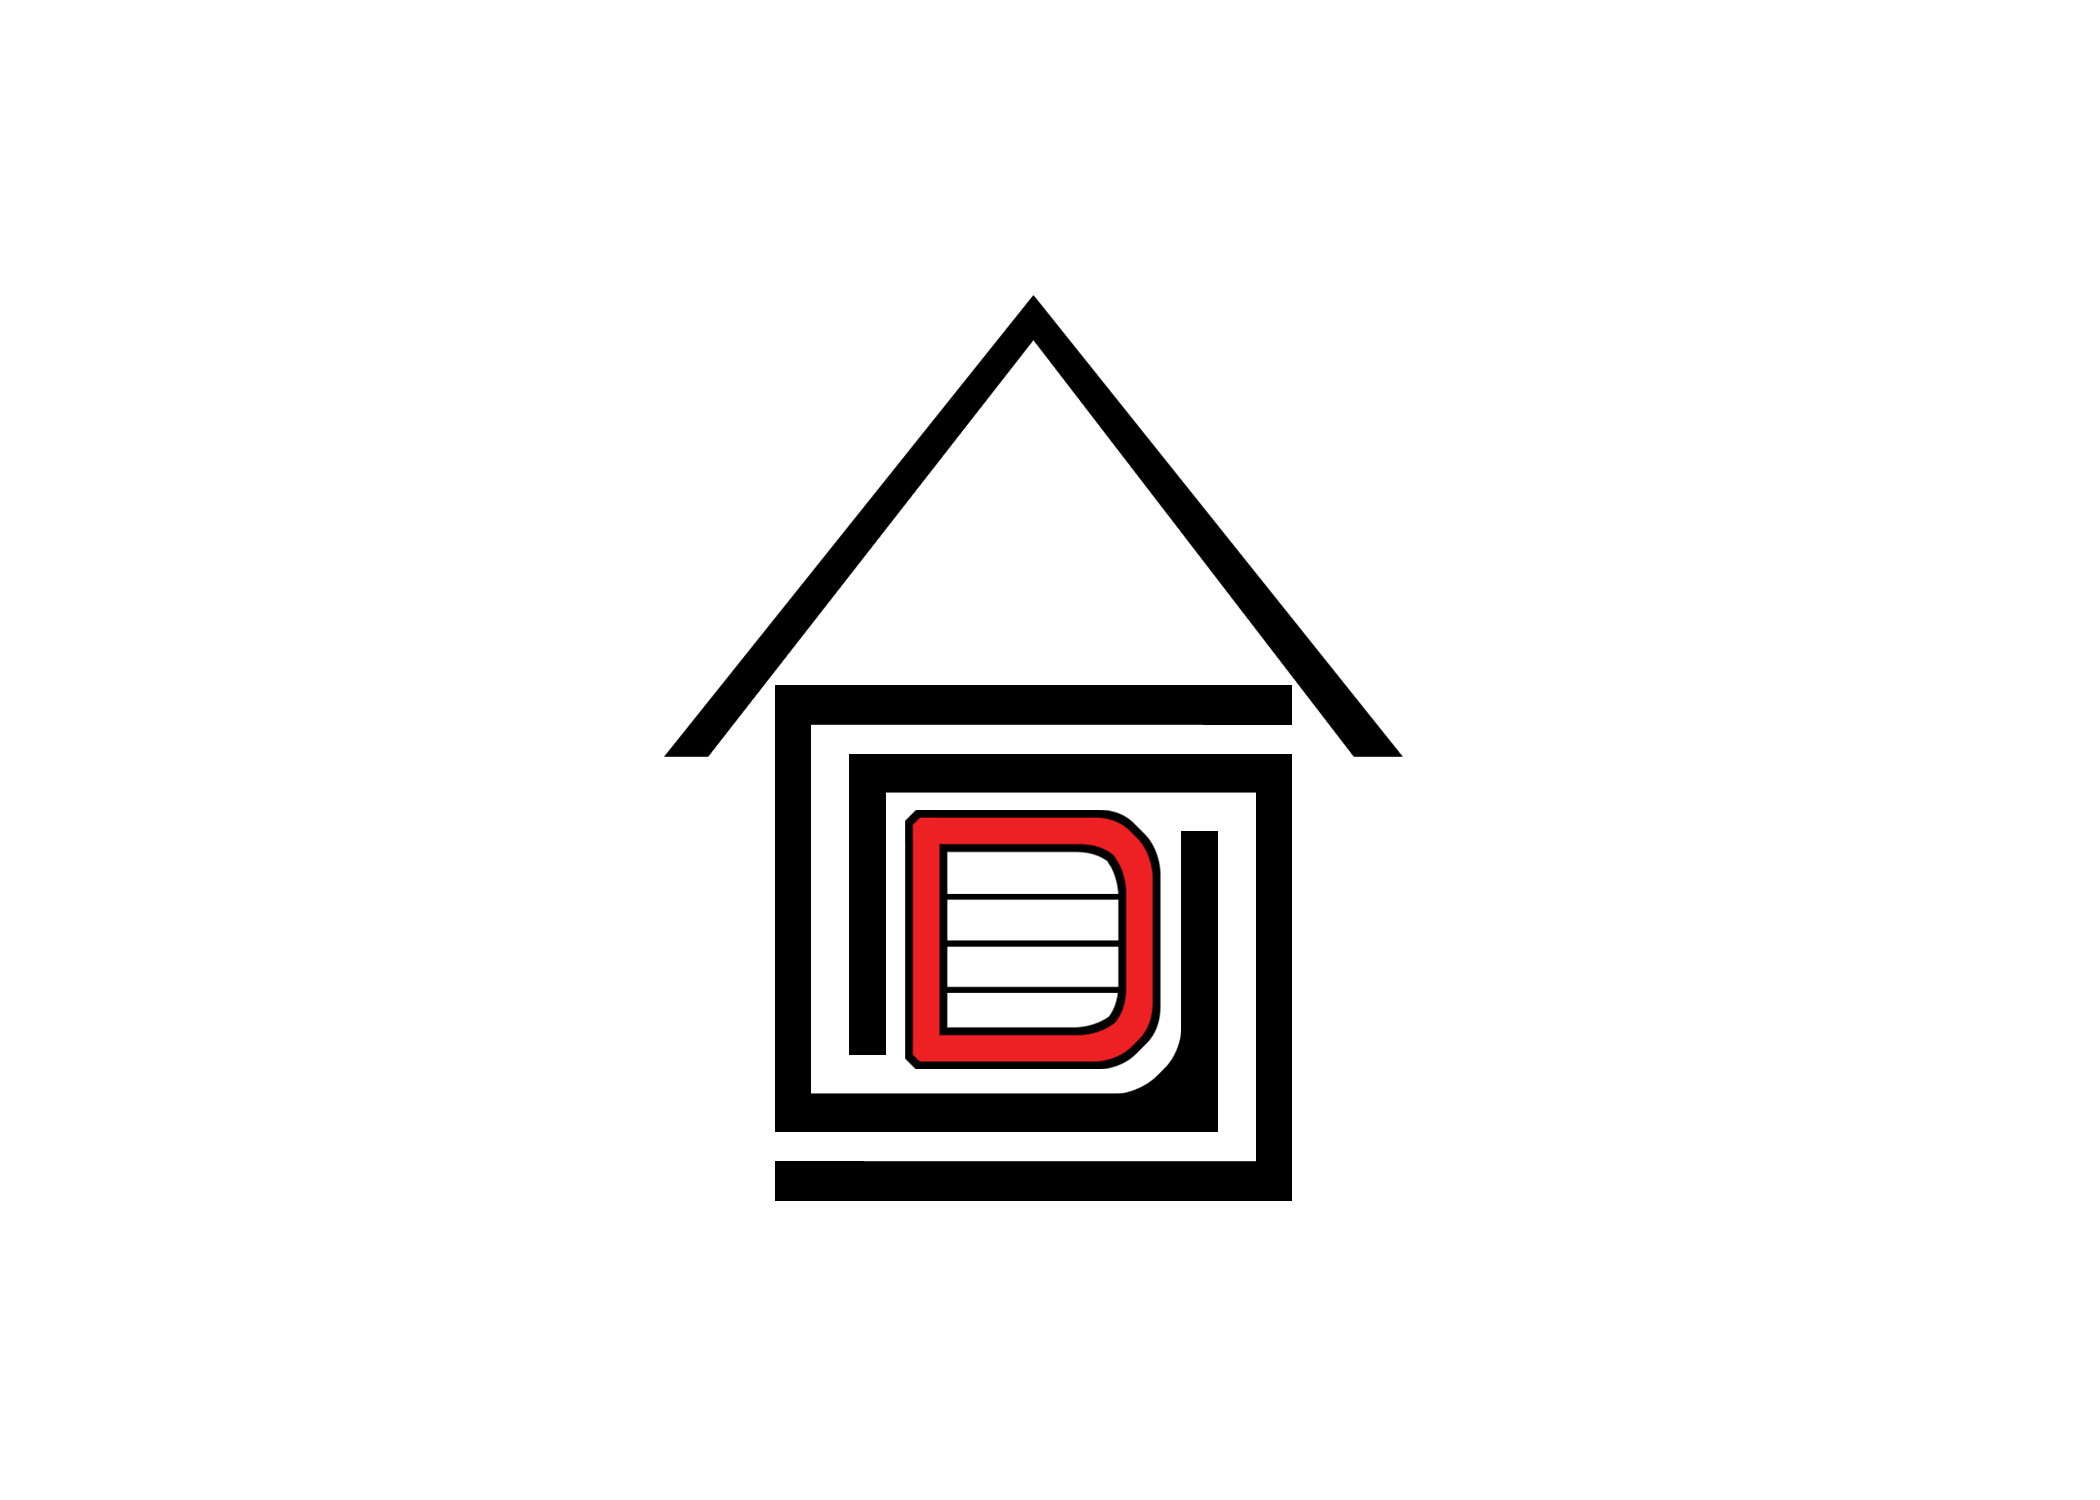 Garage Door Gurus Logo